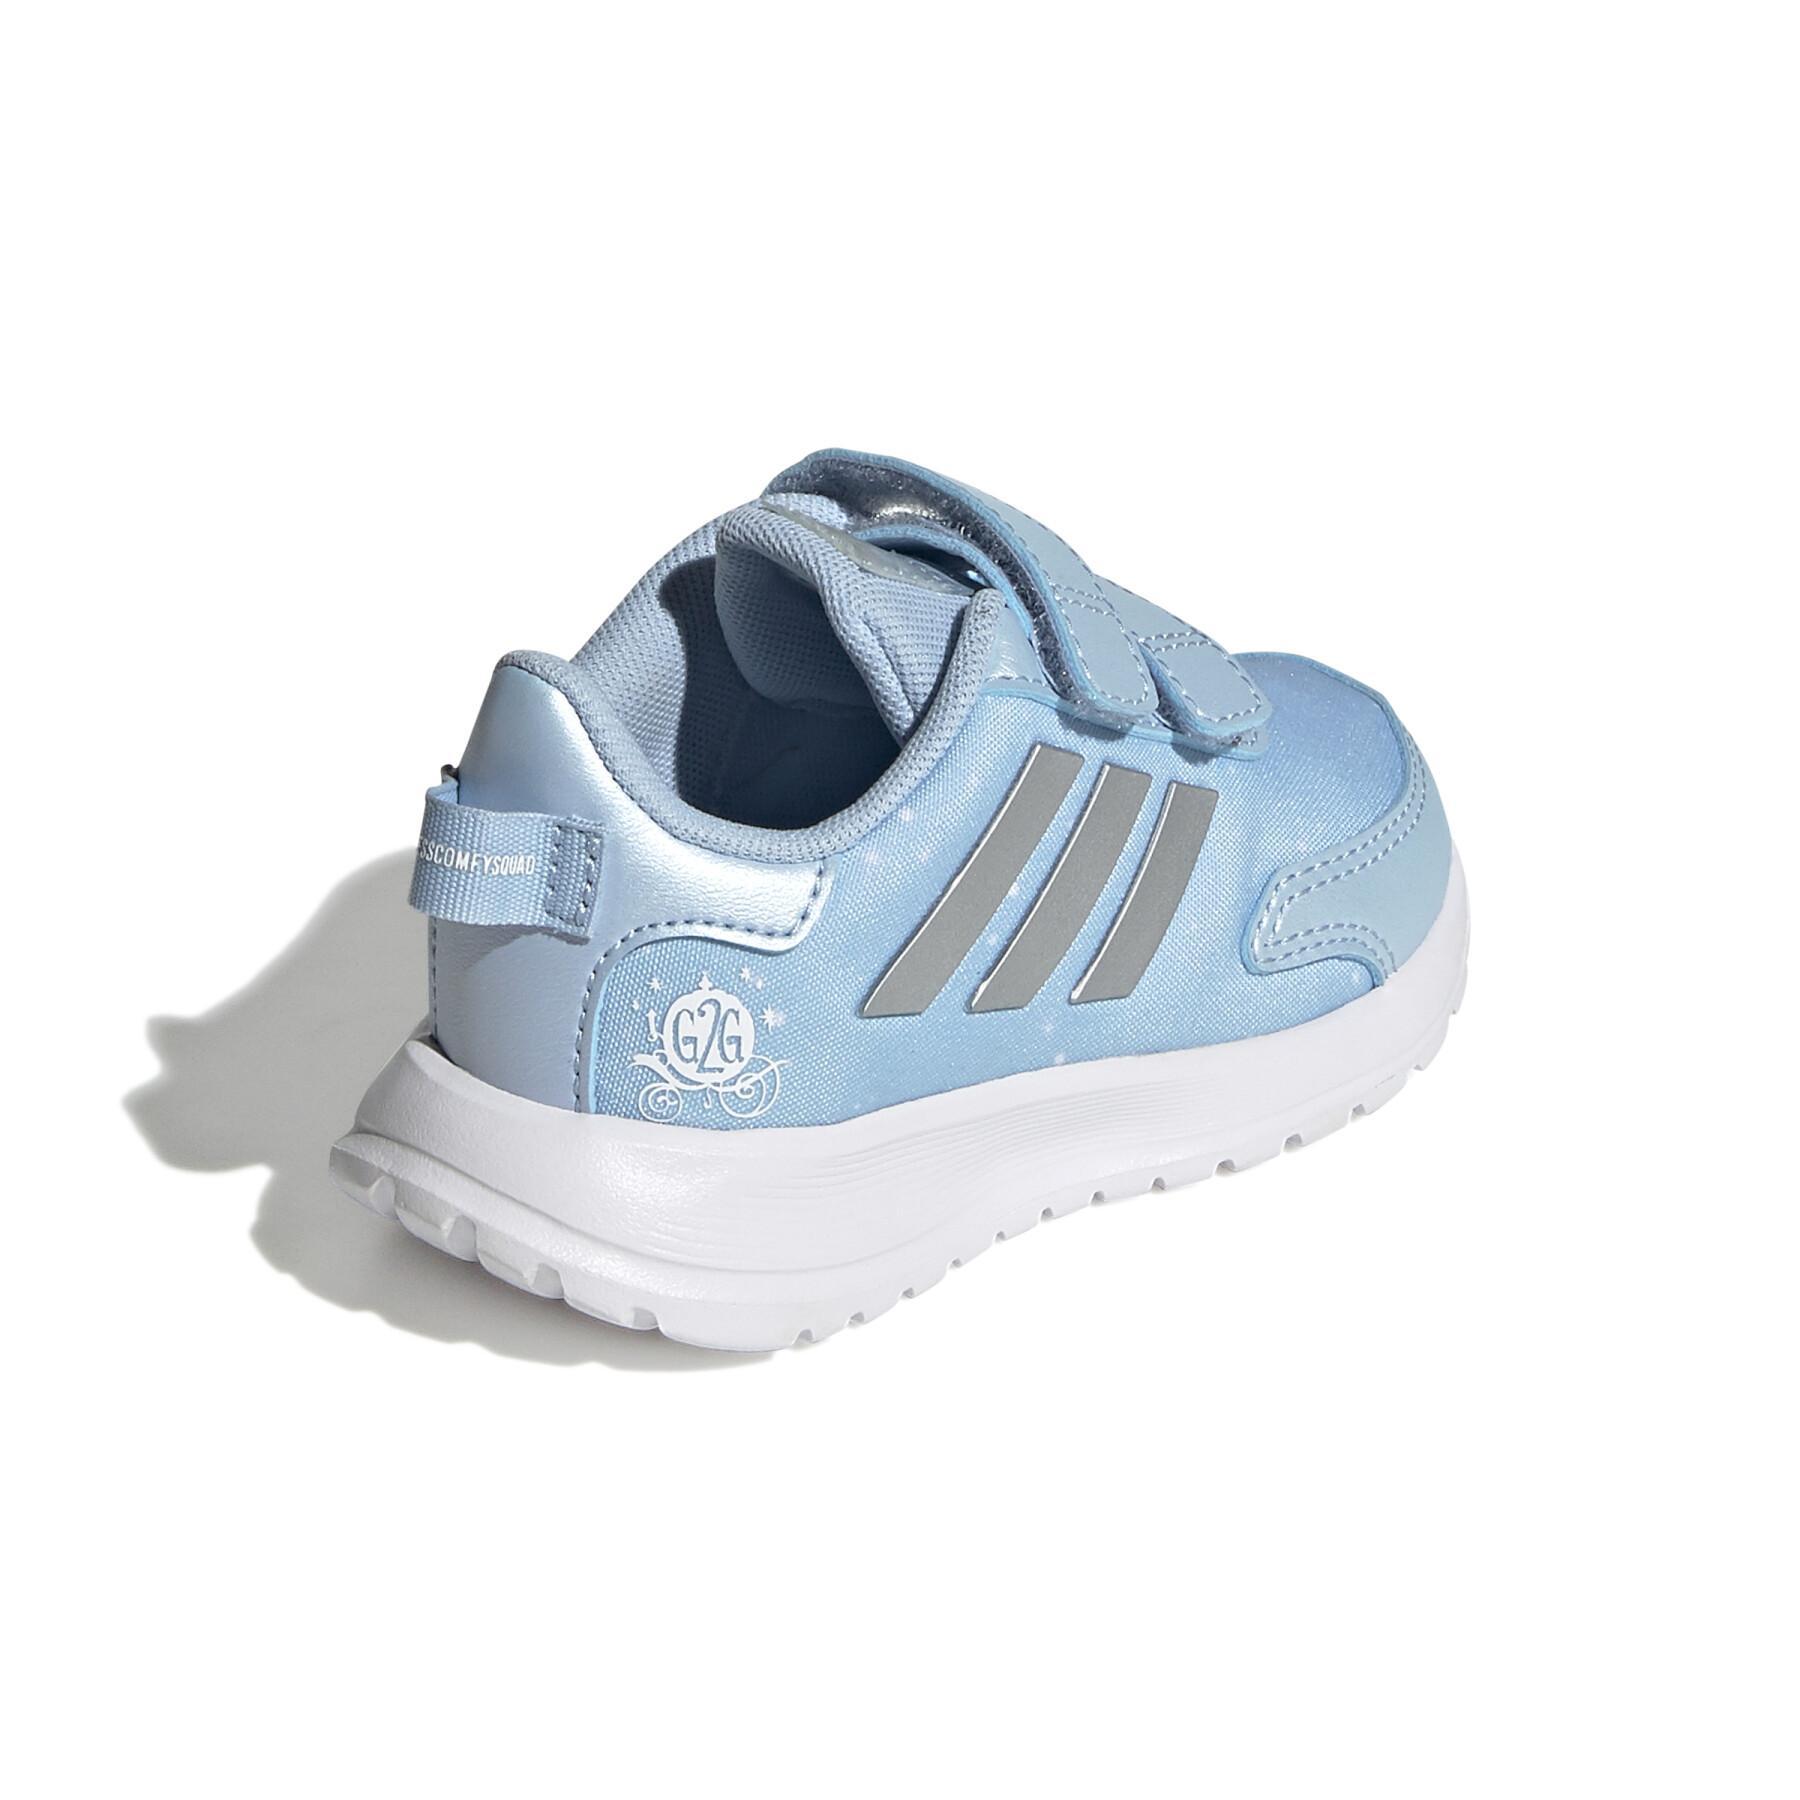 Children's running shoes adidas Tensaur Run